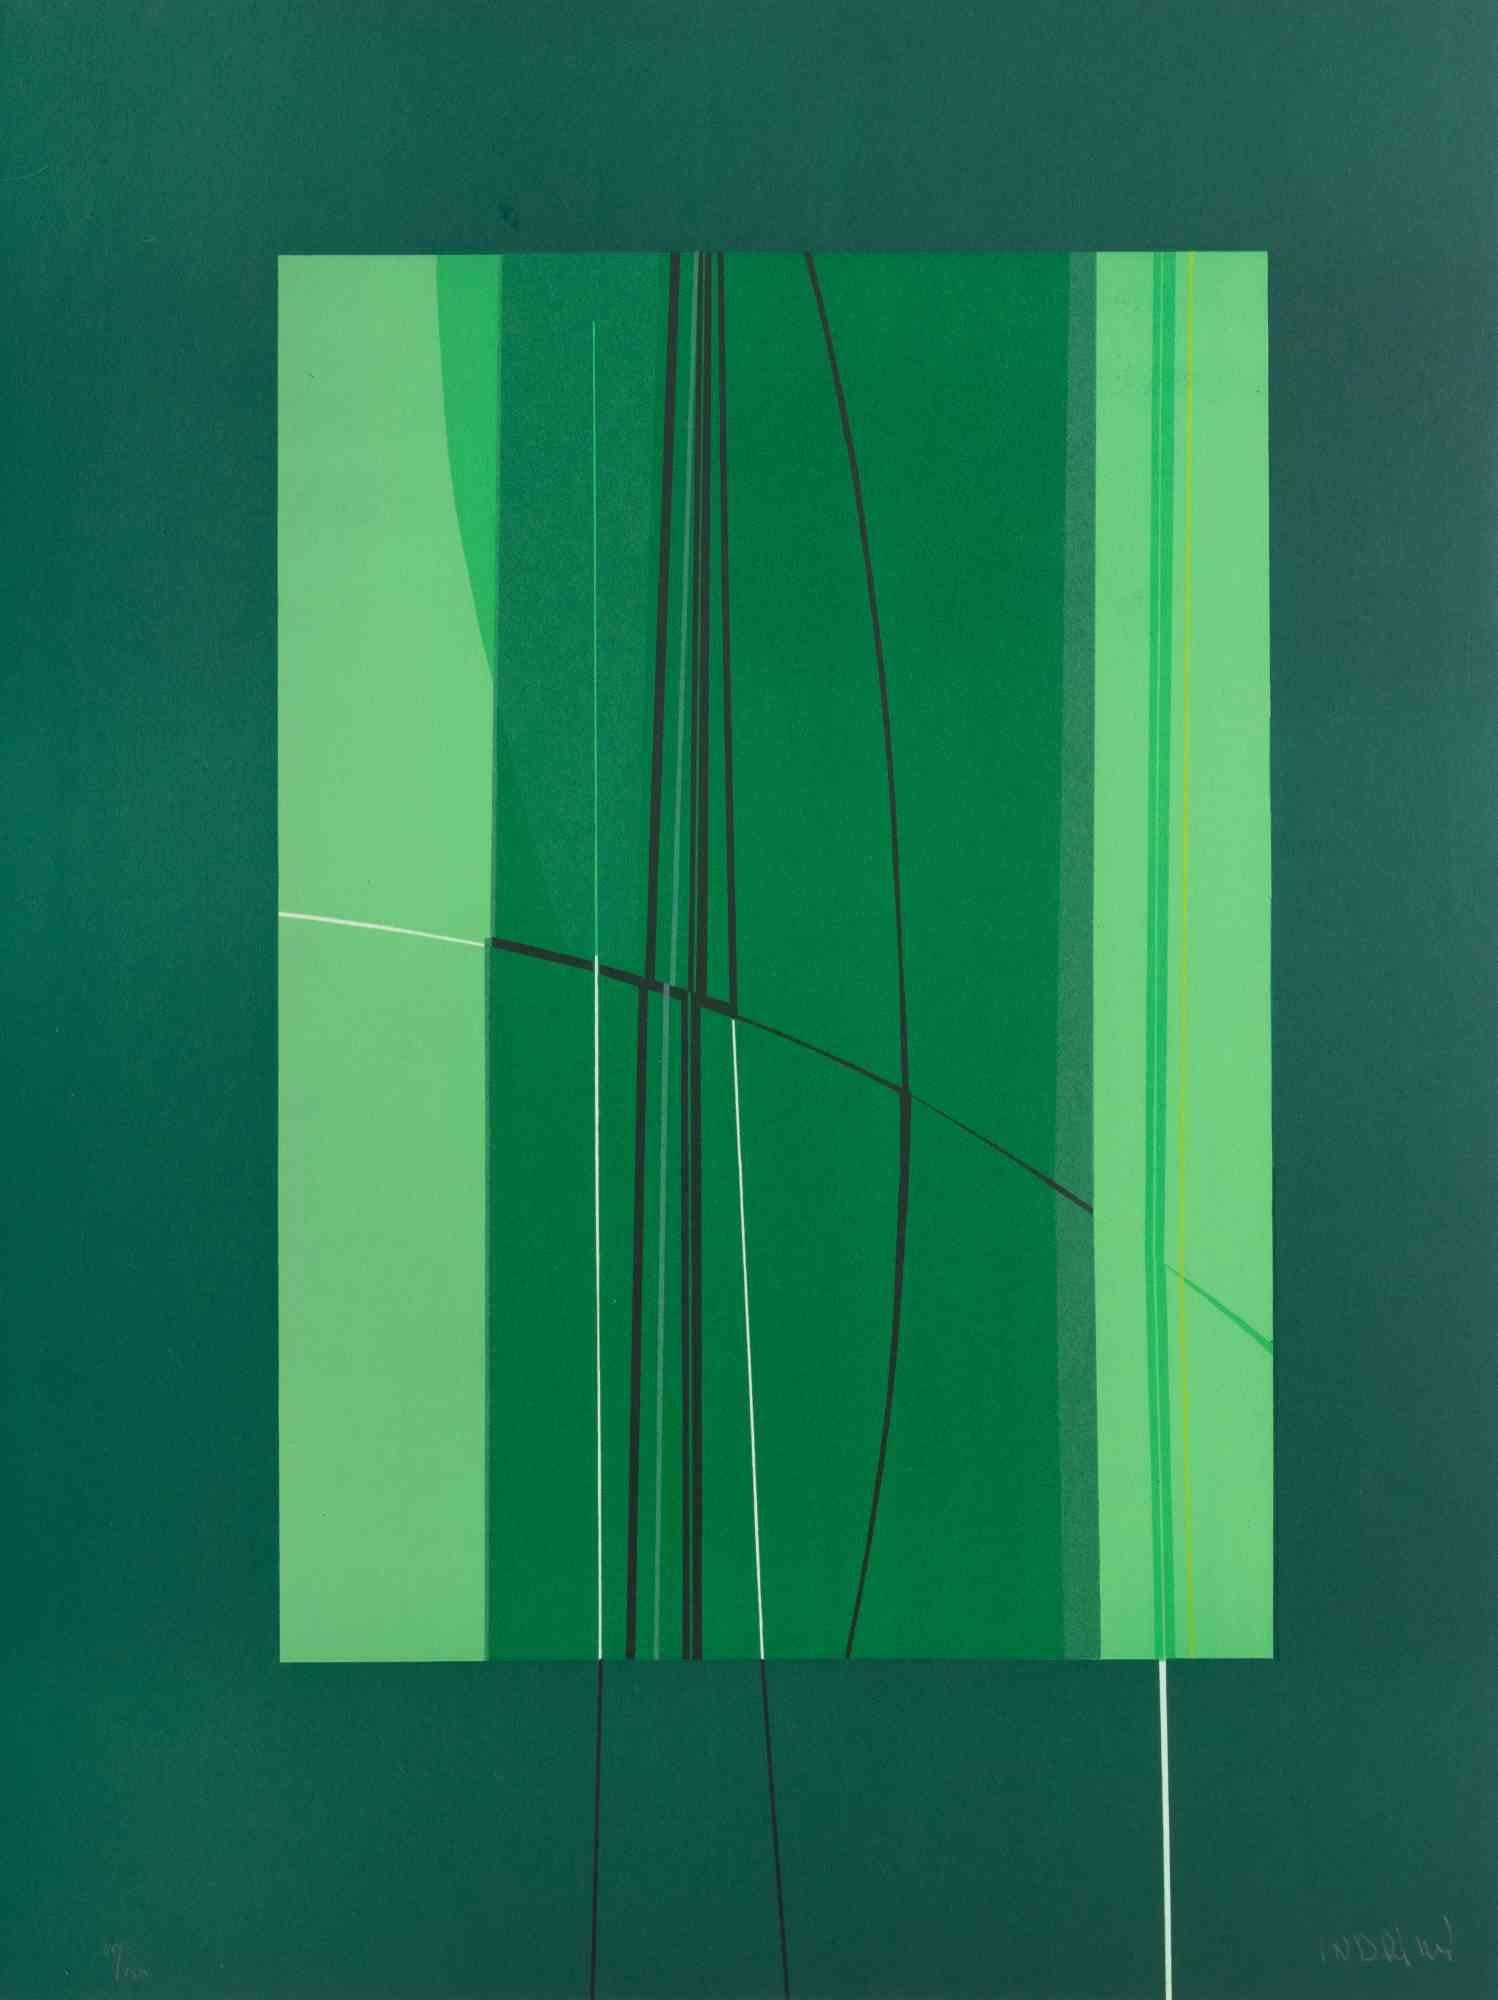 Green ist ein zeitgenössisches Kunstwerk von Lorenzo Indrimi aus den 1970er Jahren.

Gemischtfarbige Lithographie.

Am unteren Rand handsigniert und datiert.

Auflage von 40/150.

